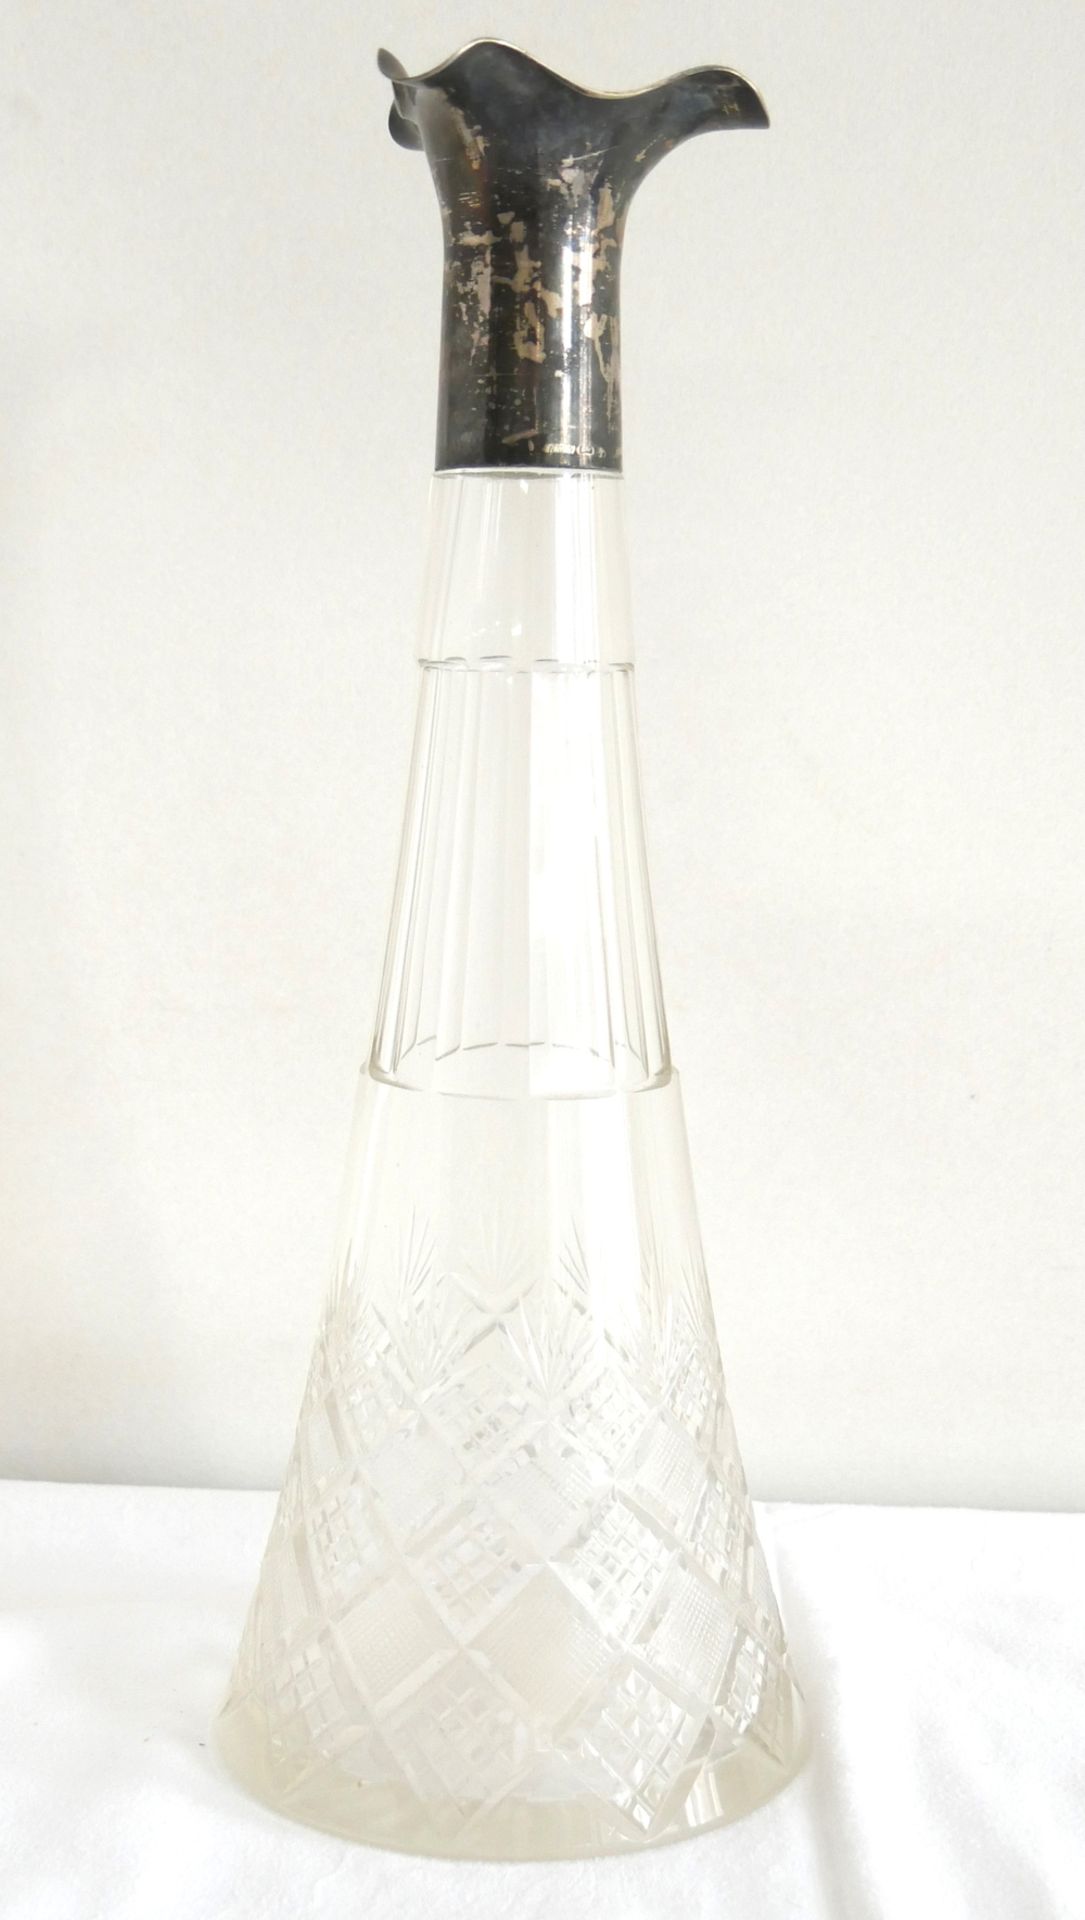 Likörflasche mit Silbermontur, Flasche mit Schliff. Ohne Stöpsel. Höhe ca. 31,5 cm